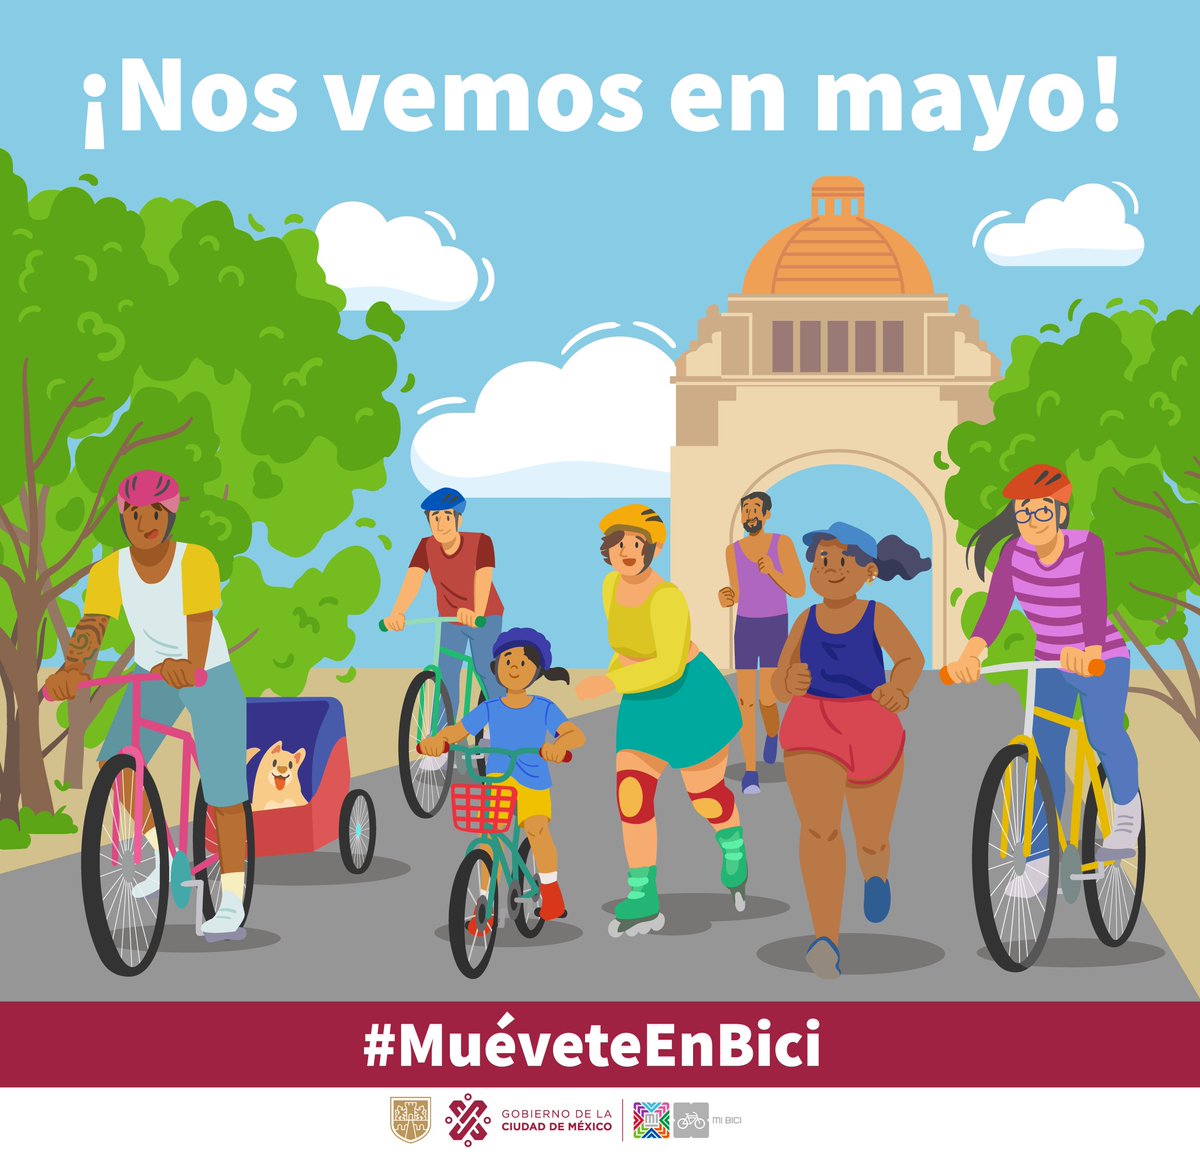 ¡No lo olvides!🧐 El último domingo de cada mes no hay Paseo Dominical #MuéveteEnBici 🚶‍♂️🏃‍♀️🚴‍♀️☀️ Este fin de semana hay #Ciclotón, organizado por nuestros amigos de @DeporteCDMX 🤸‍♂️🧘‍♀️🕺🚴‍♂️ ¡Nos vemos en mayo! 🚴‍♂️😎